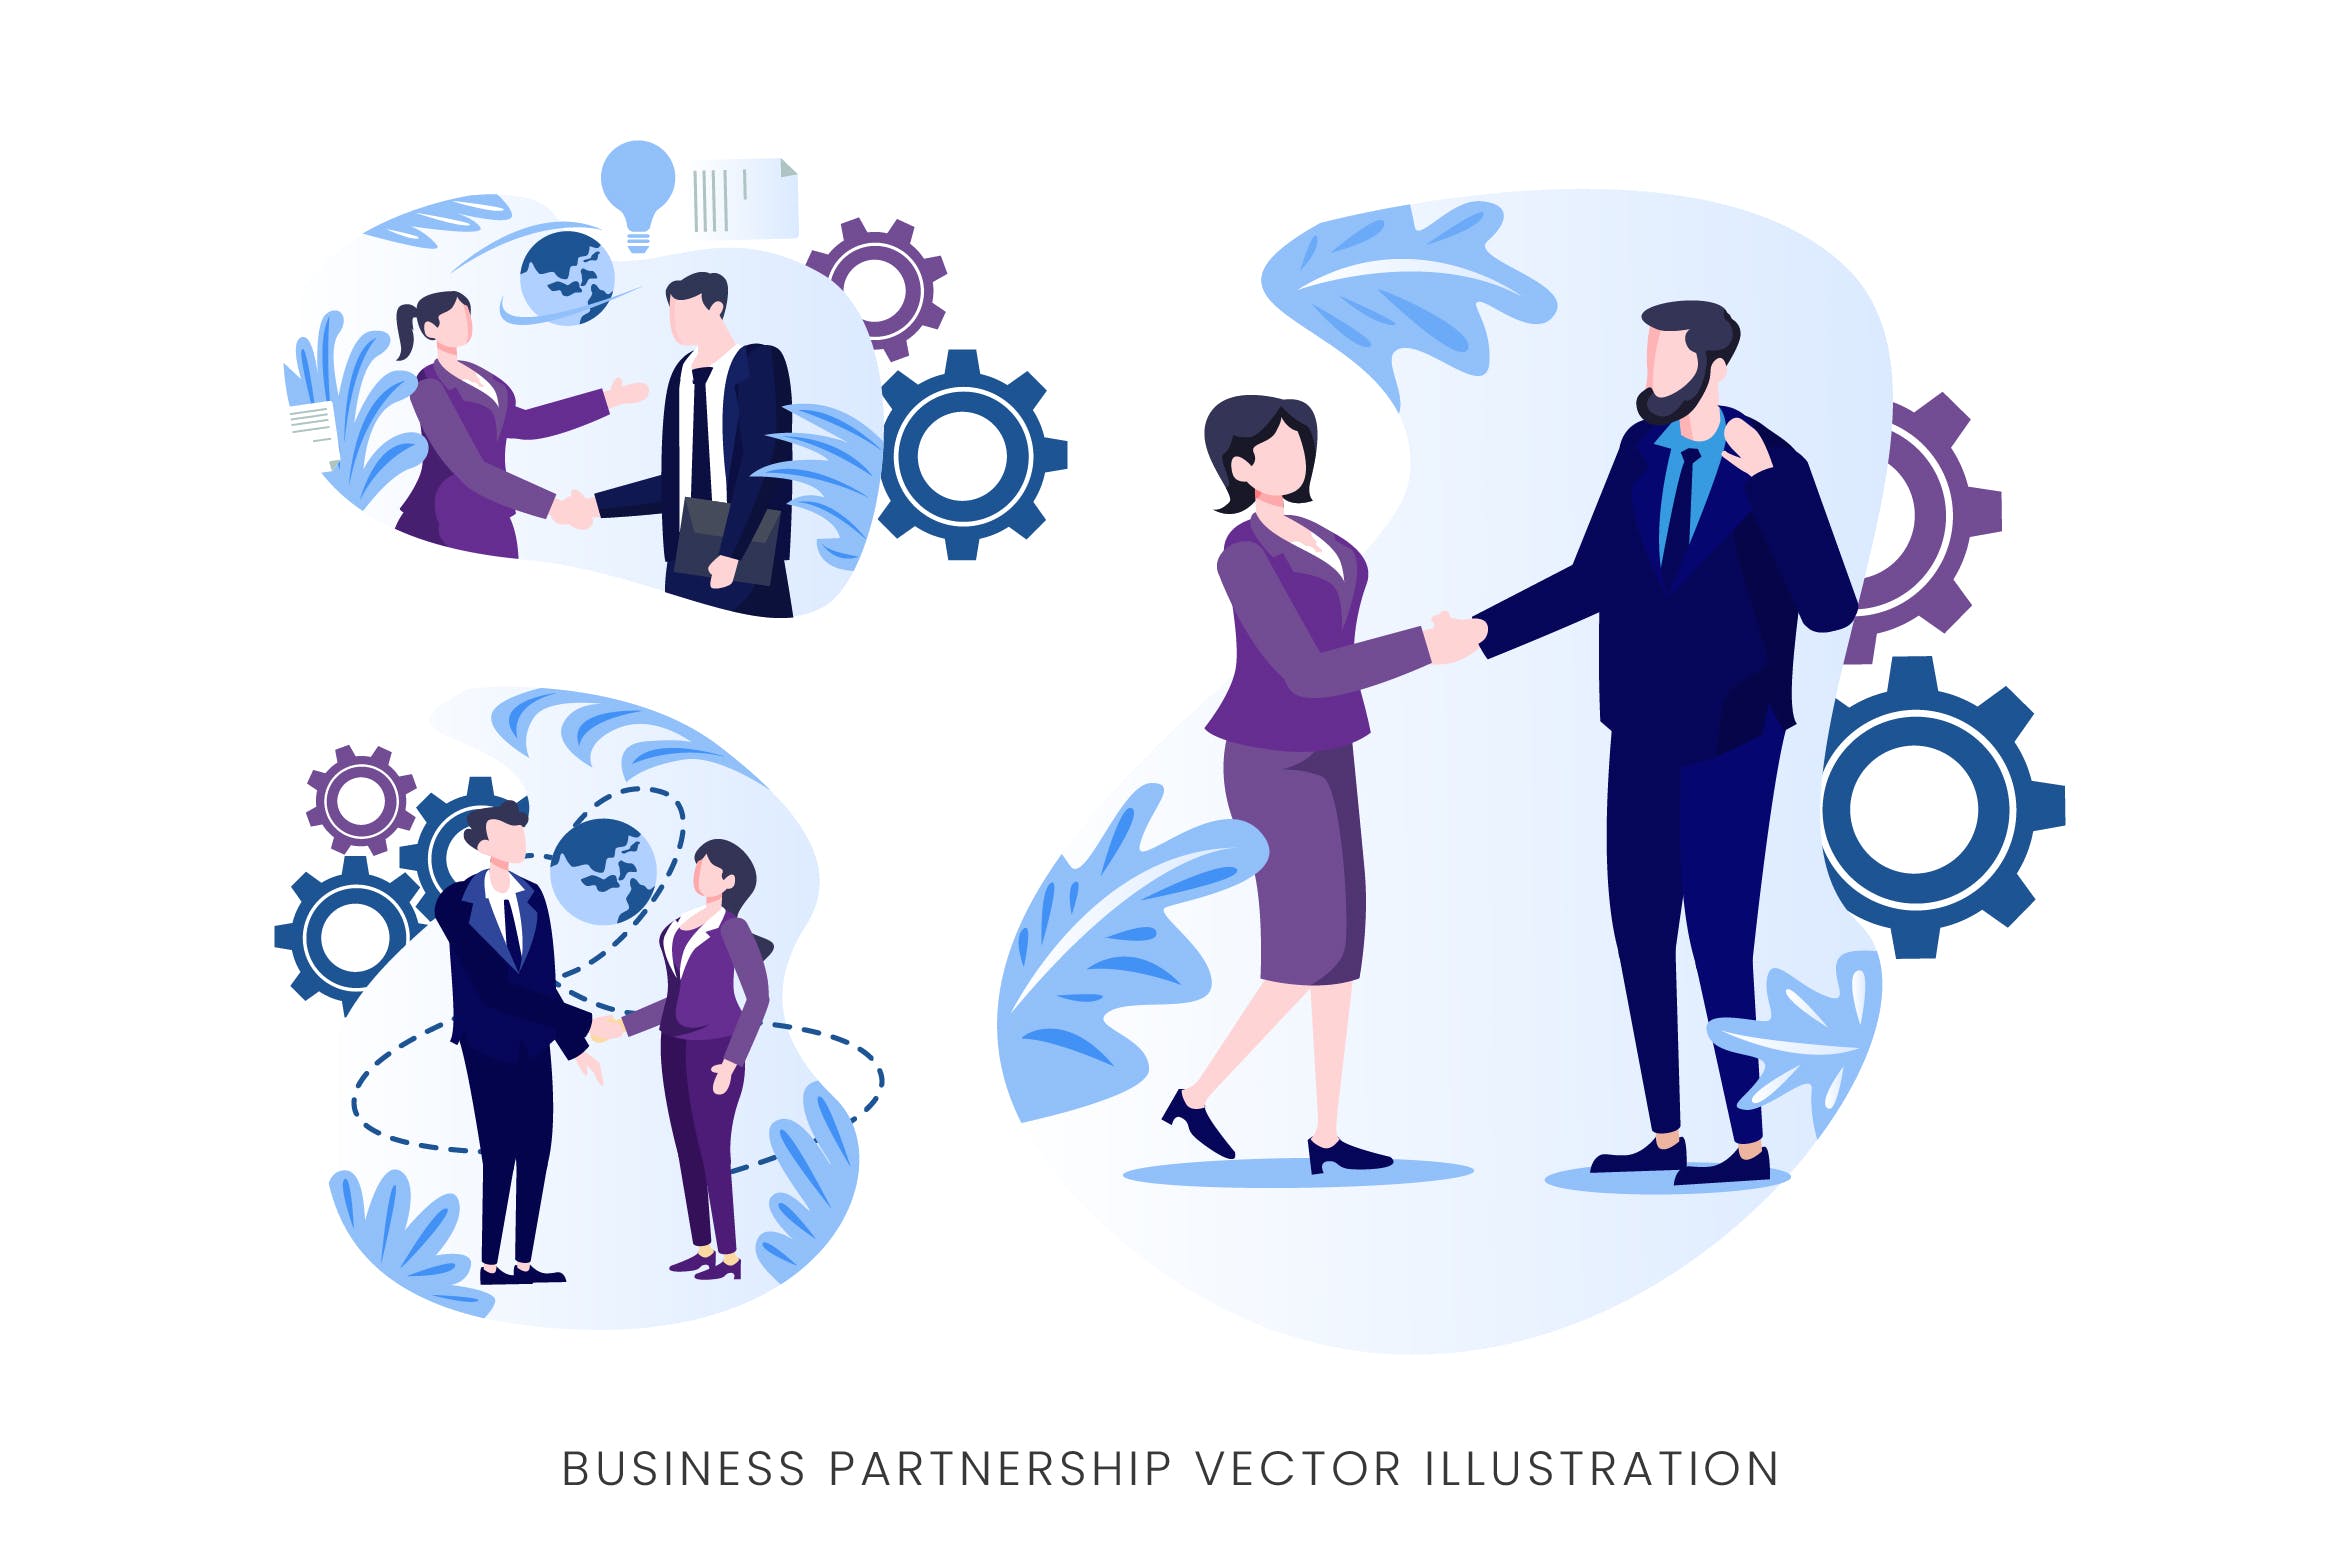 业务伙伴关系人物形象蚂蚁素材精选手绘插画矢量素材 Business Partnership Vector Character Set插图